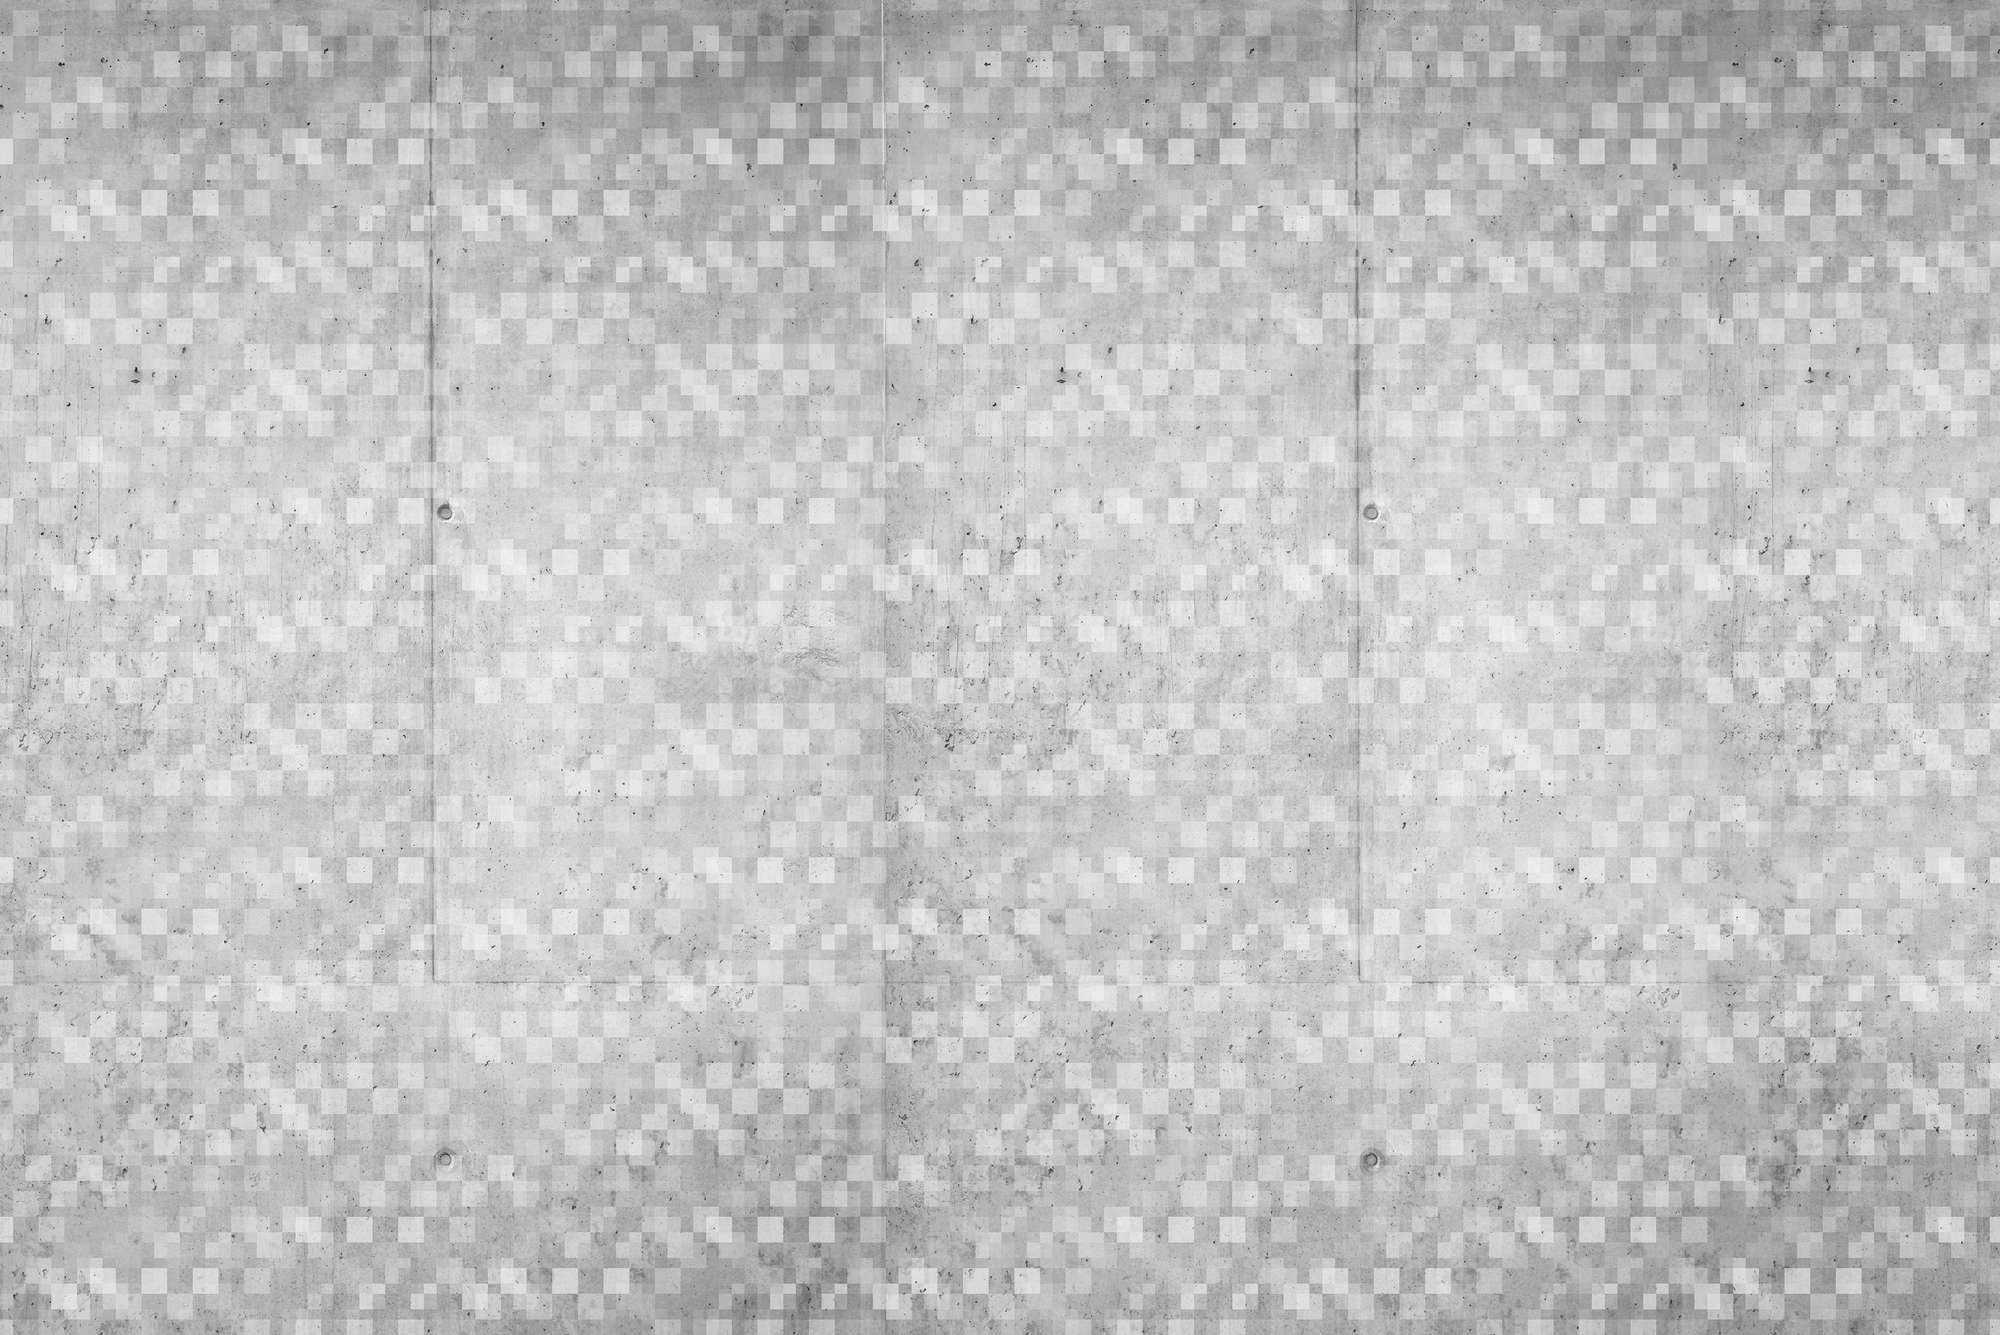             Papier peint graphique avec motif de cubes se chevauchant gris sur intissé lisse mat
        